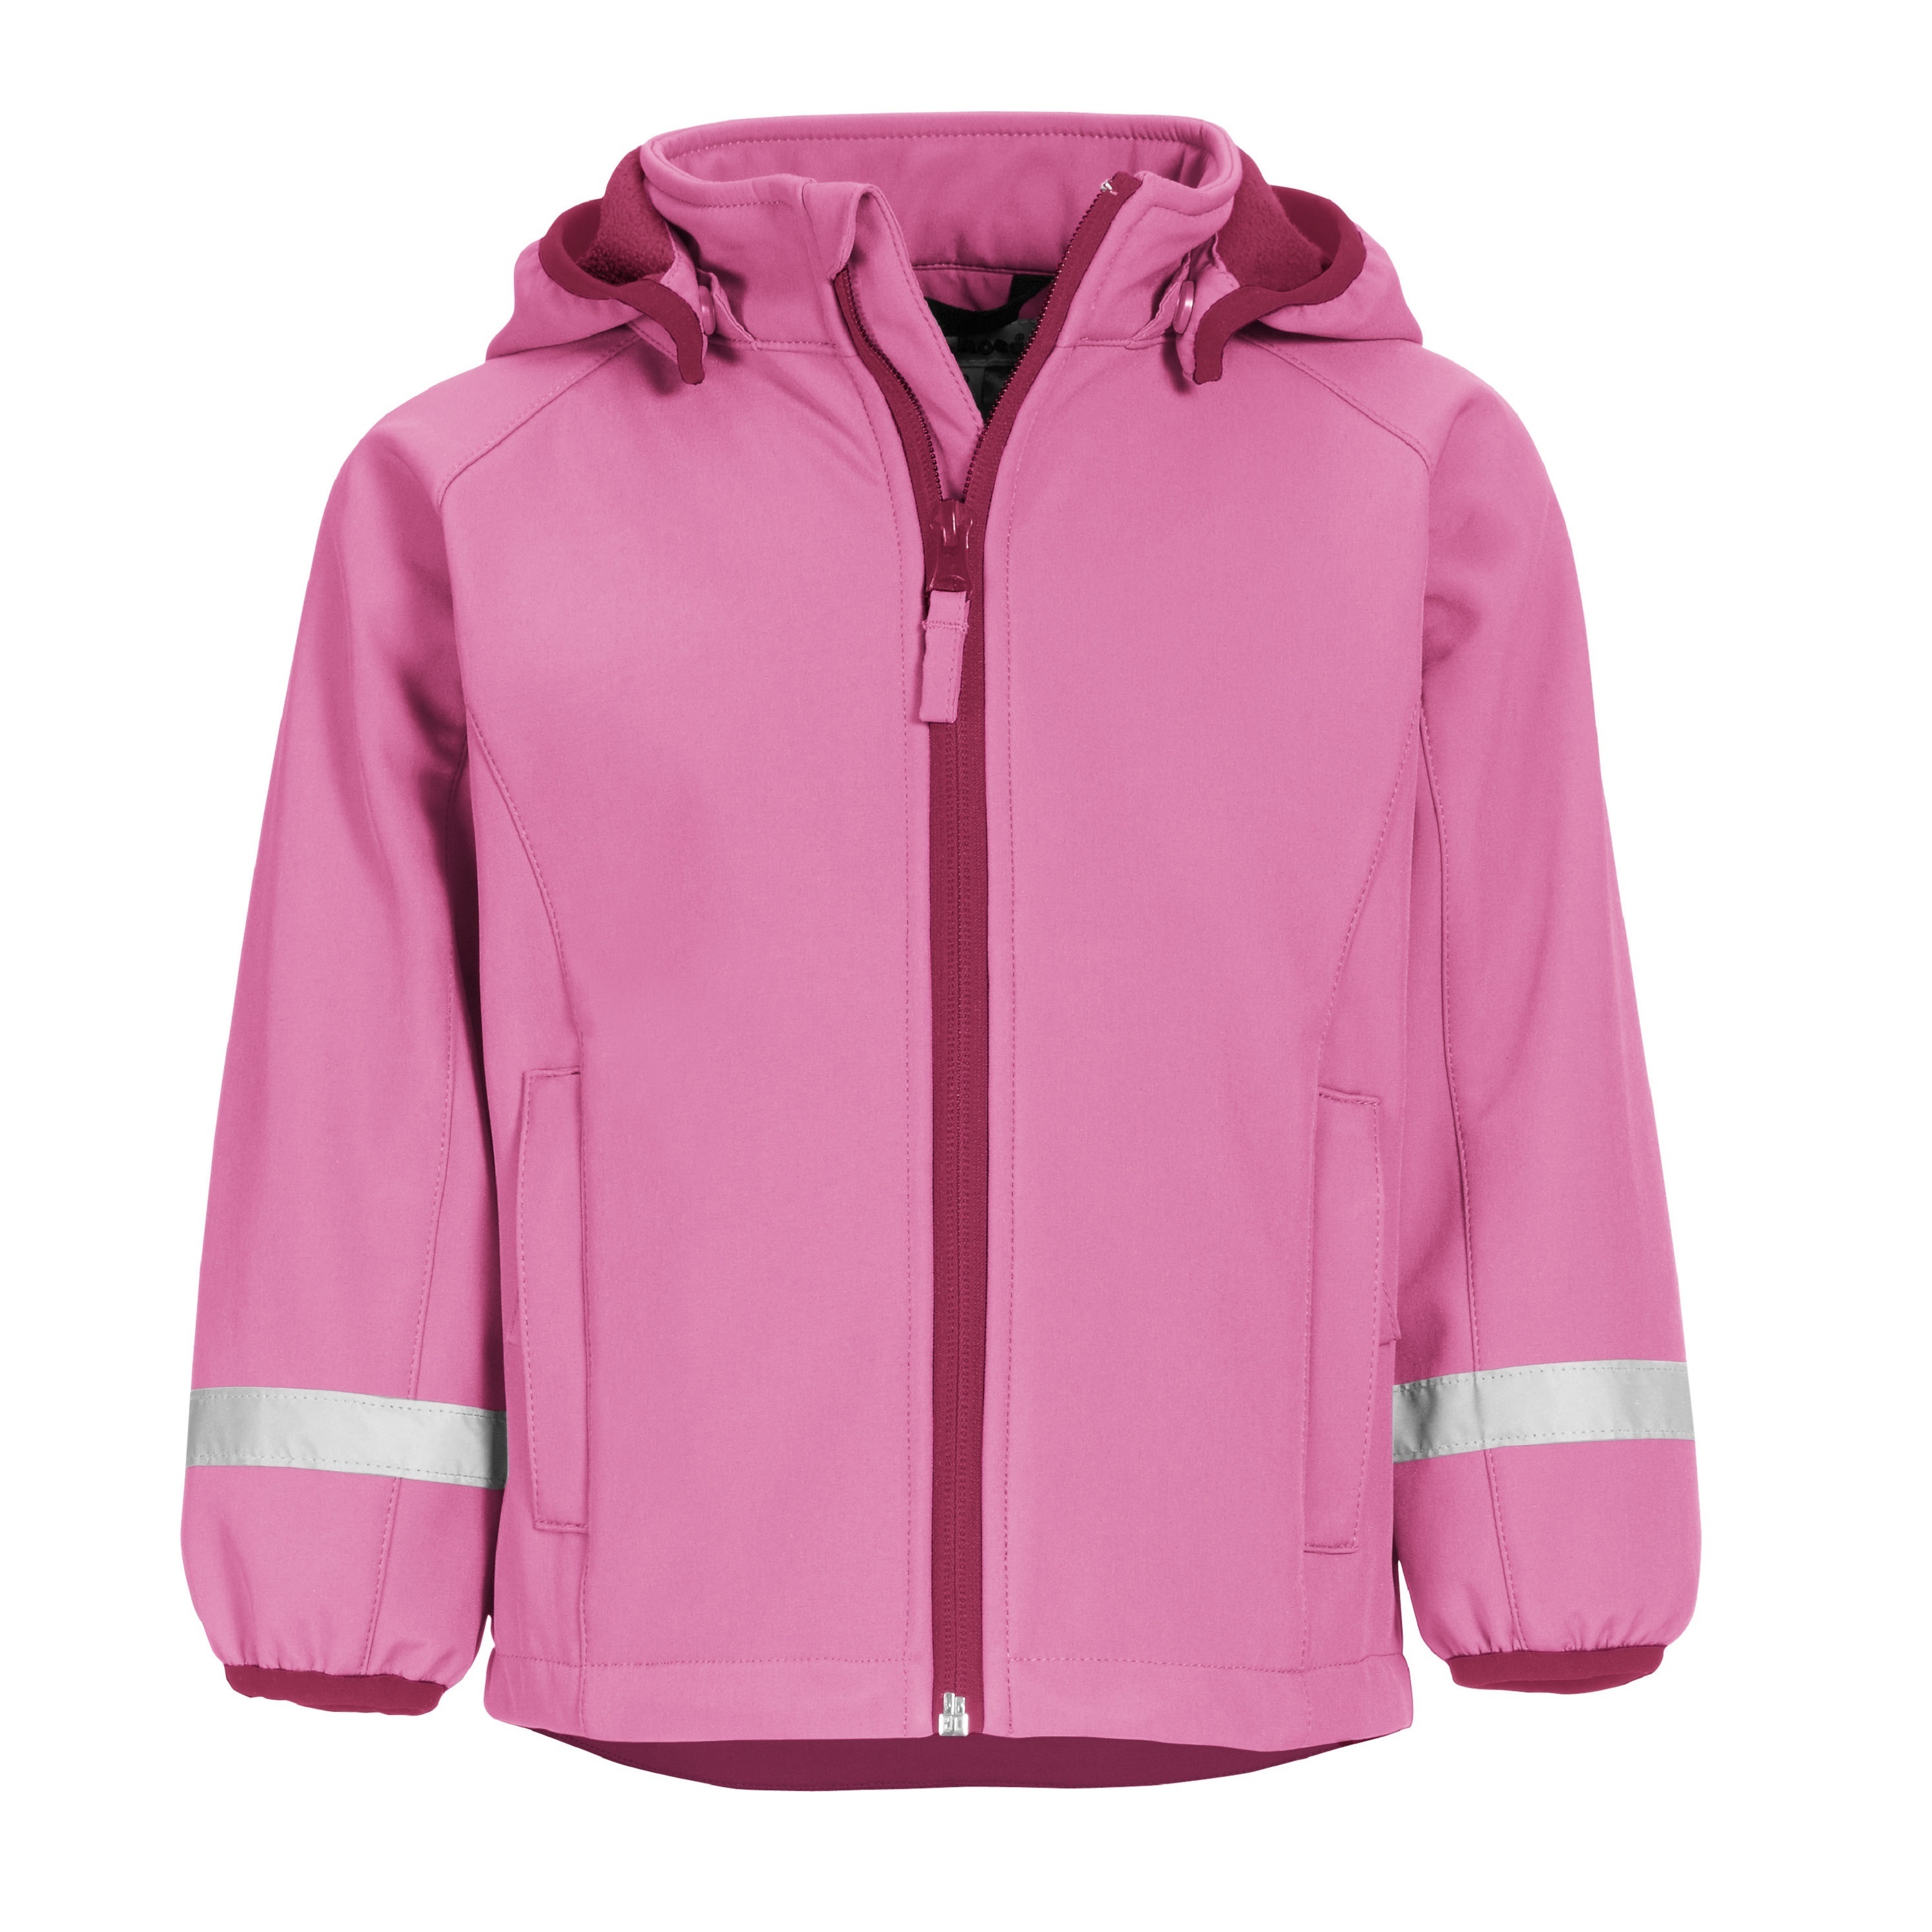 Куртка детская Playshoes 430110, розовый, 140